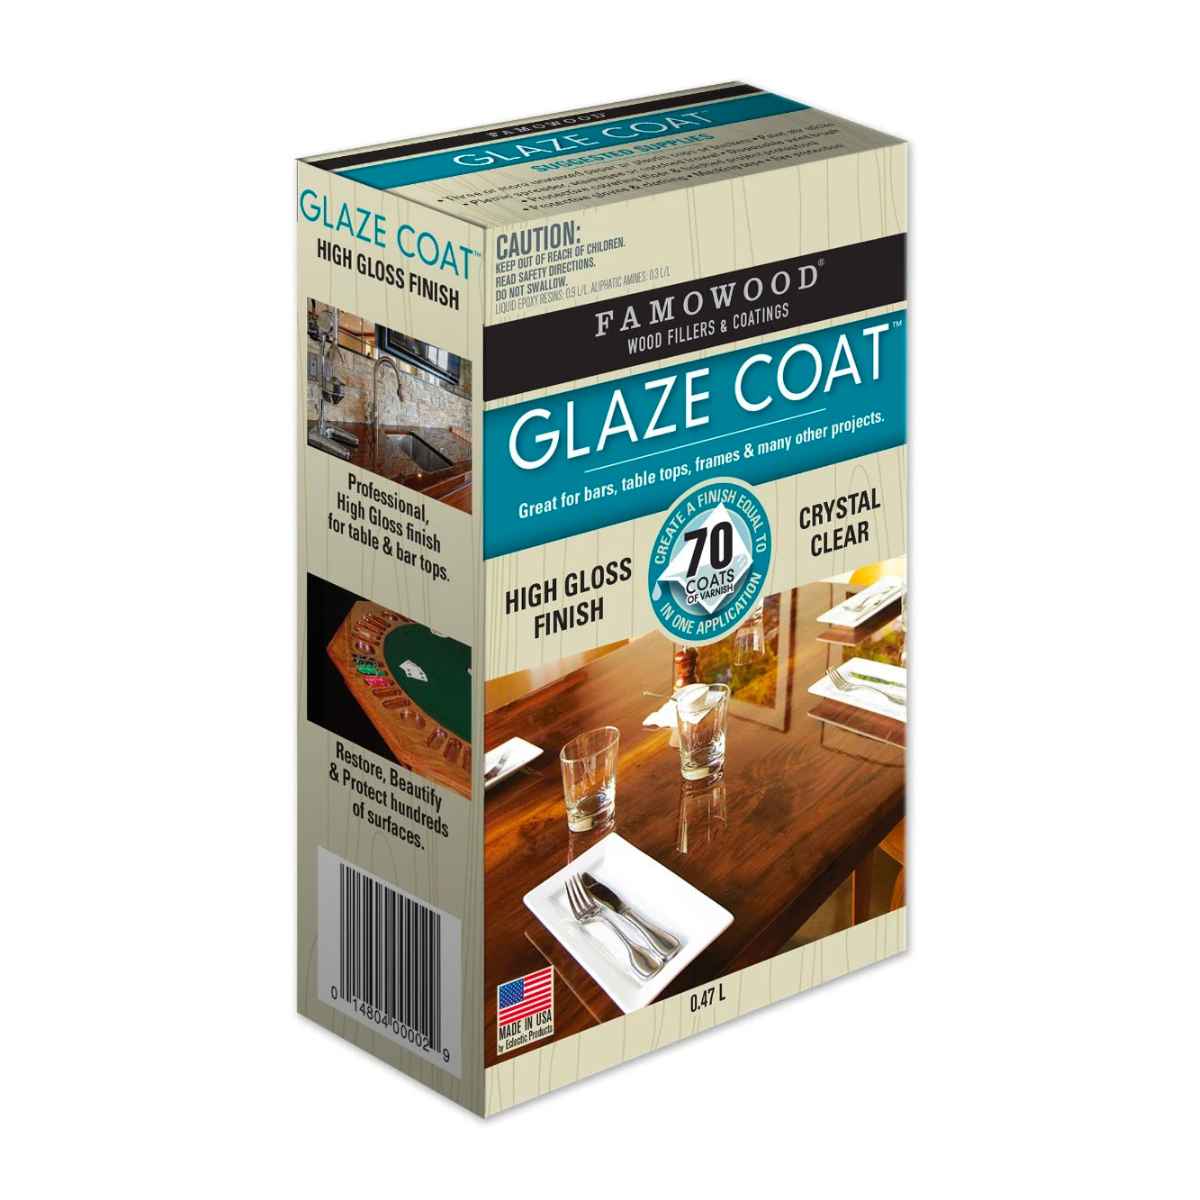 famowood glaze coat kit